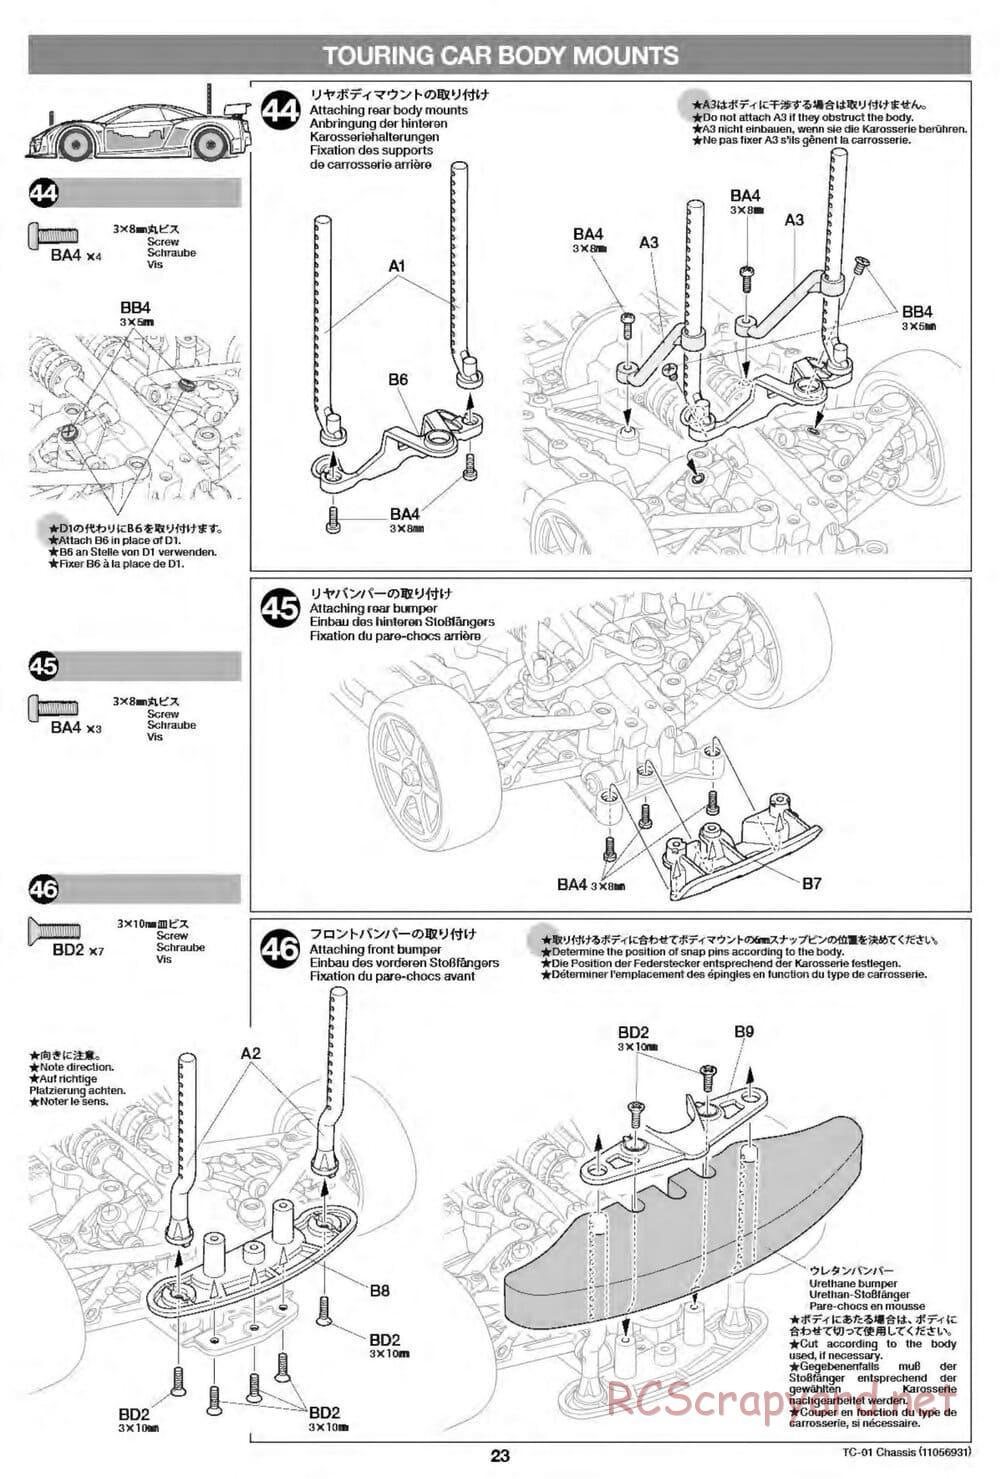 Tamiya - TC-01 Chassis - Manual - Page 23